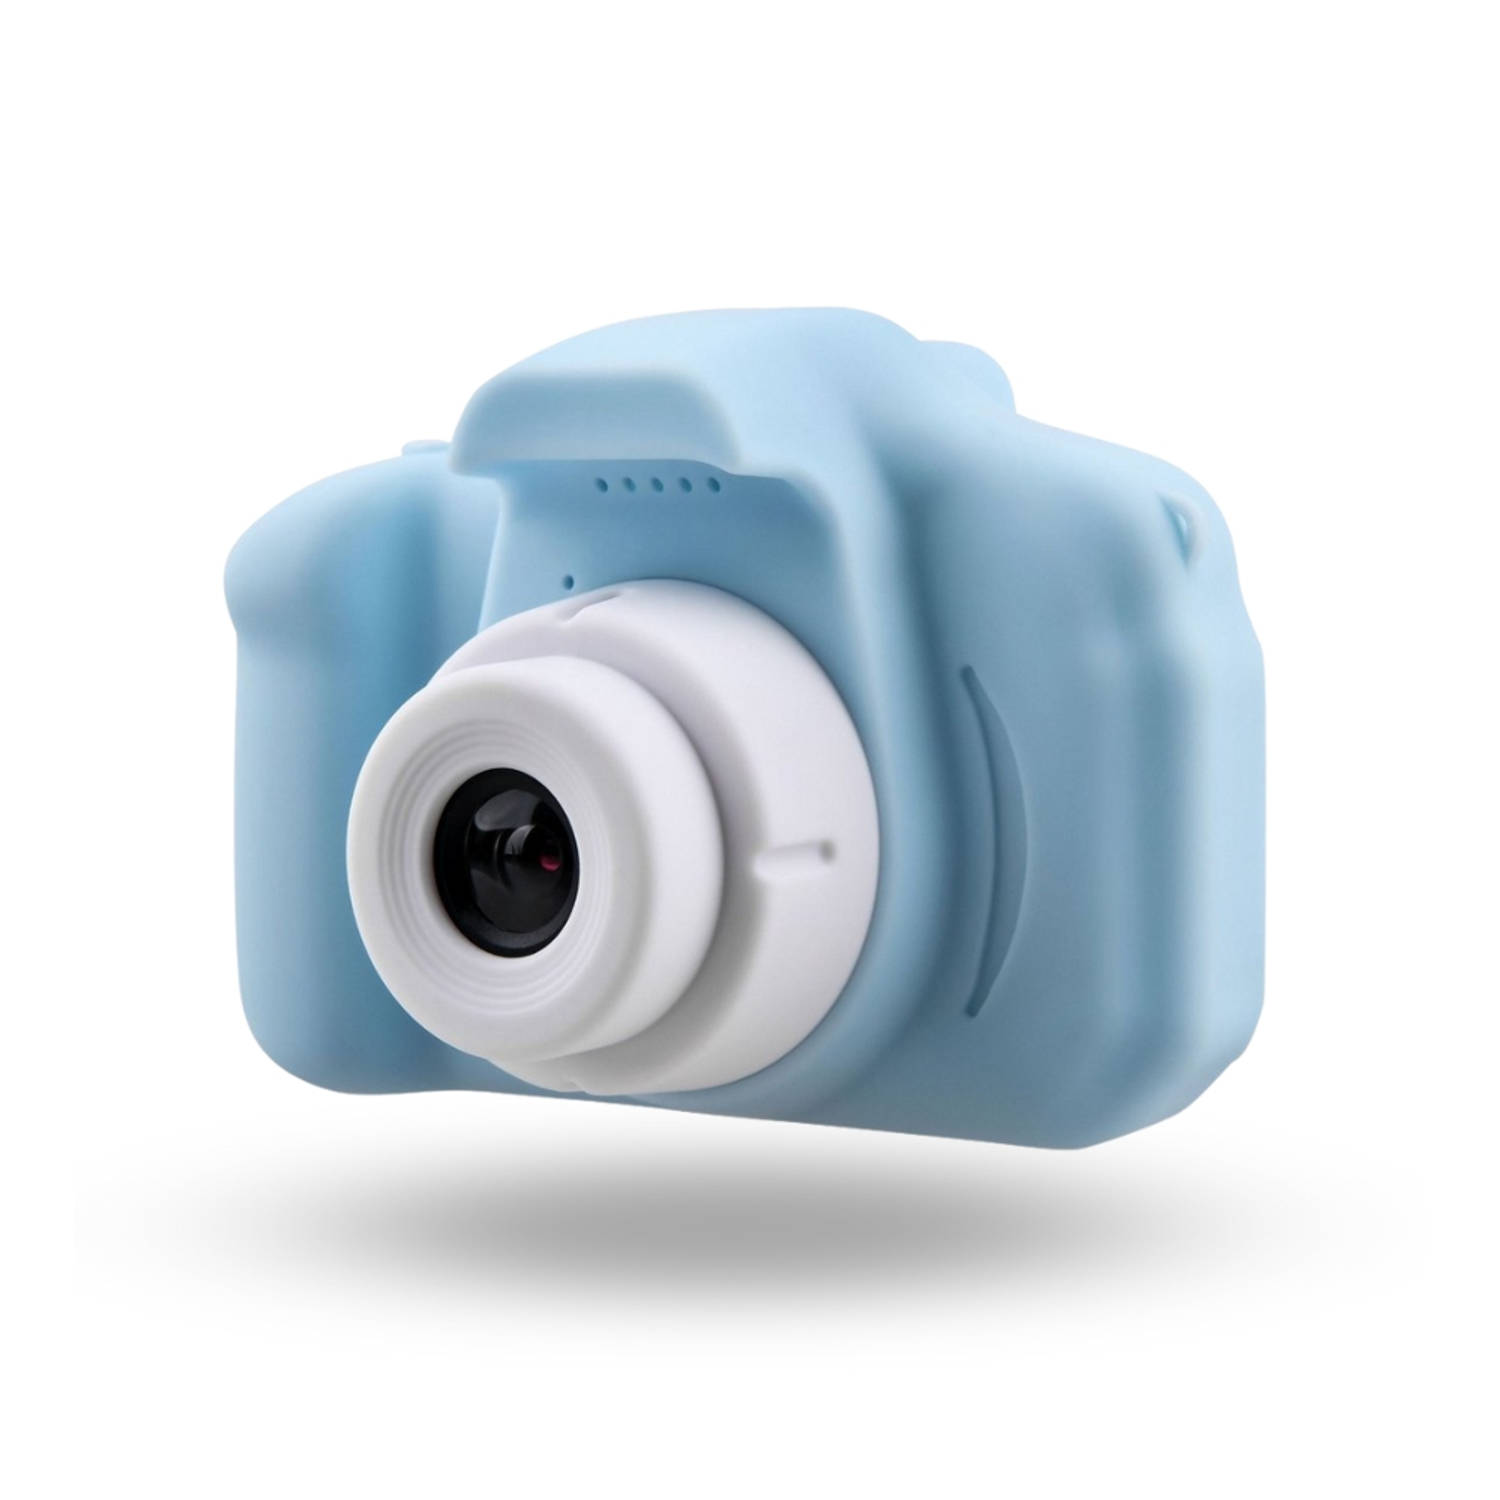 Homezie Kindercamera - Blauw - 5 Ingebouwde spelletjes - 1080p - 3 Megapixel - USB oplaadbaar - Digitale camera - Fototoestel voor kinderen